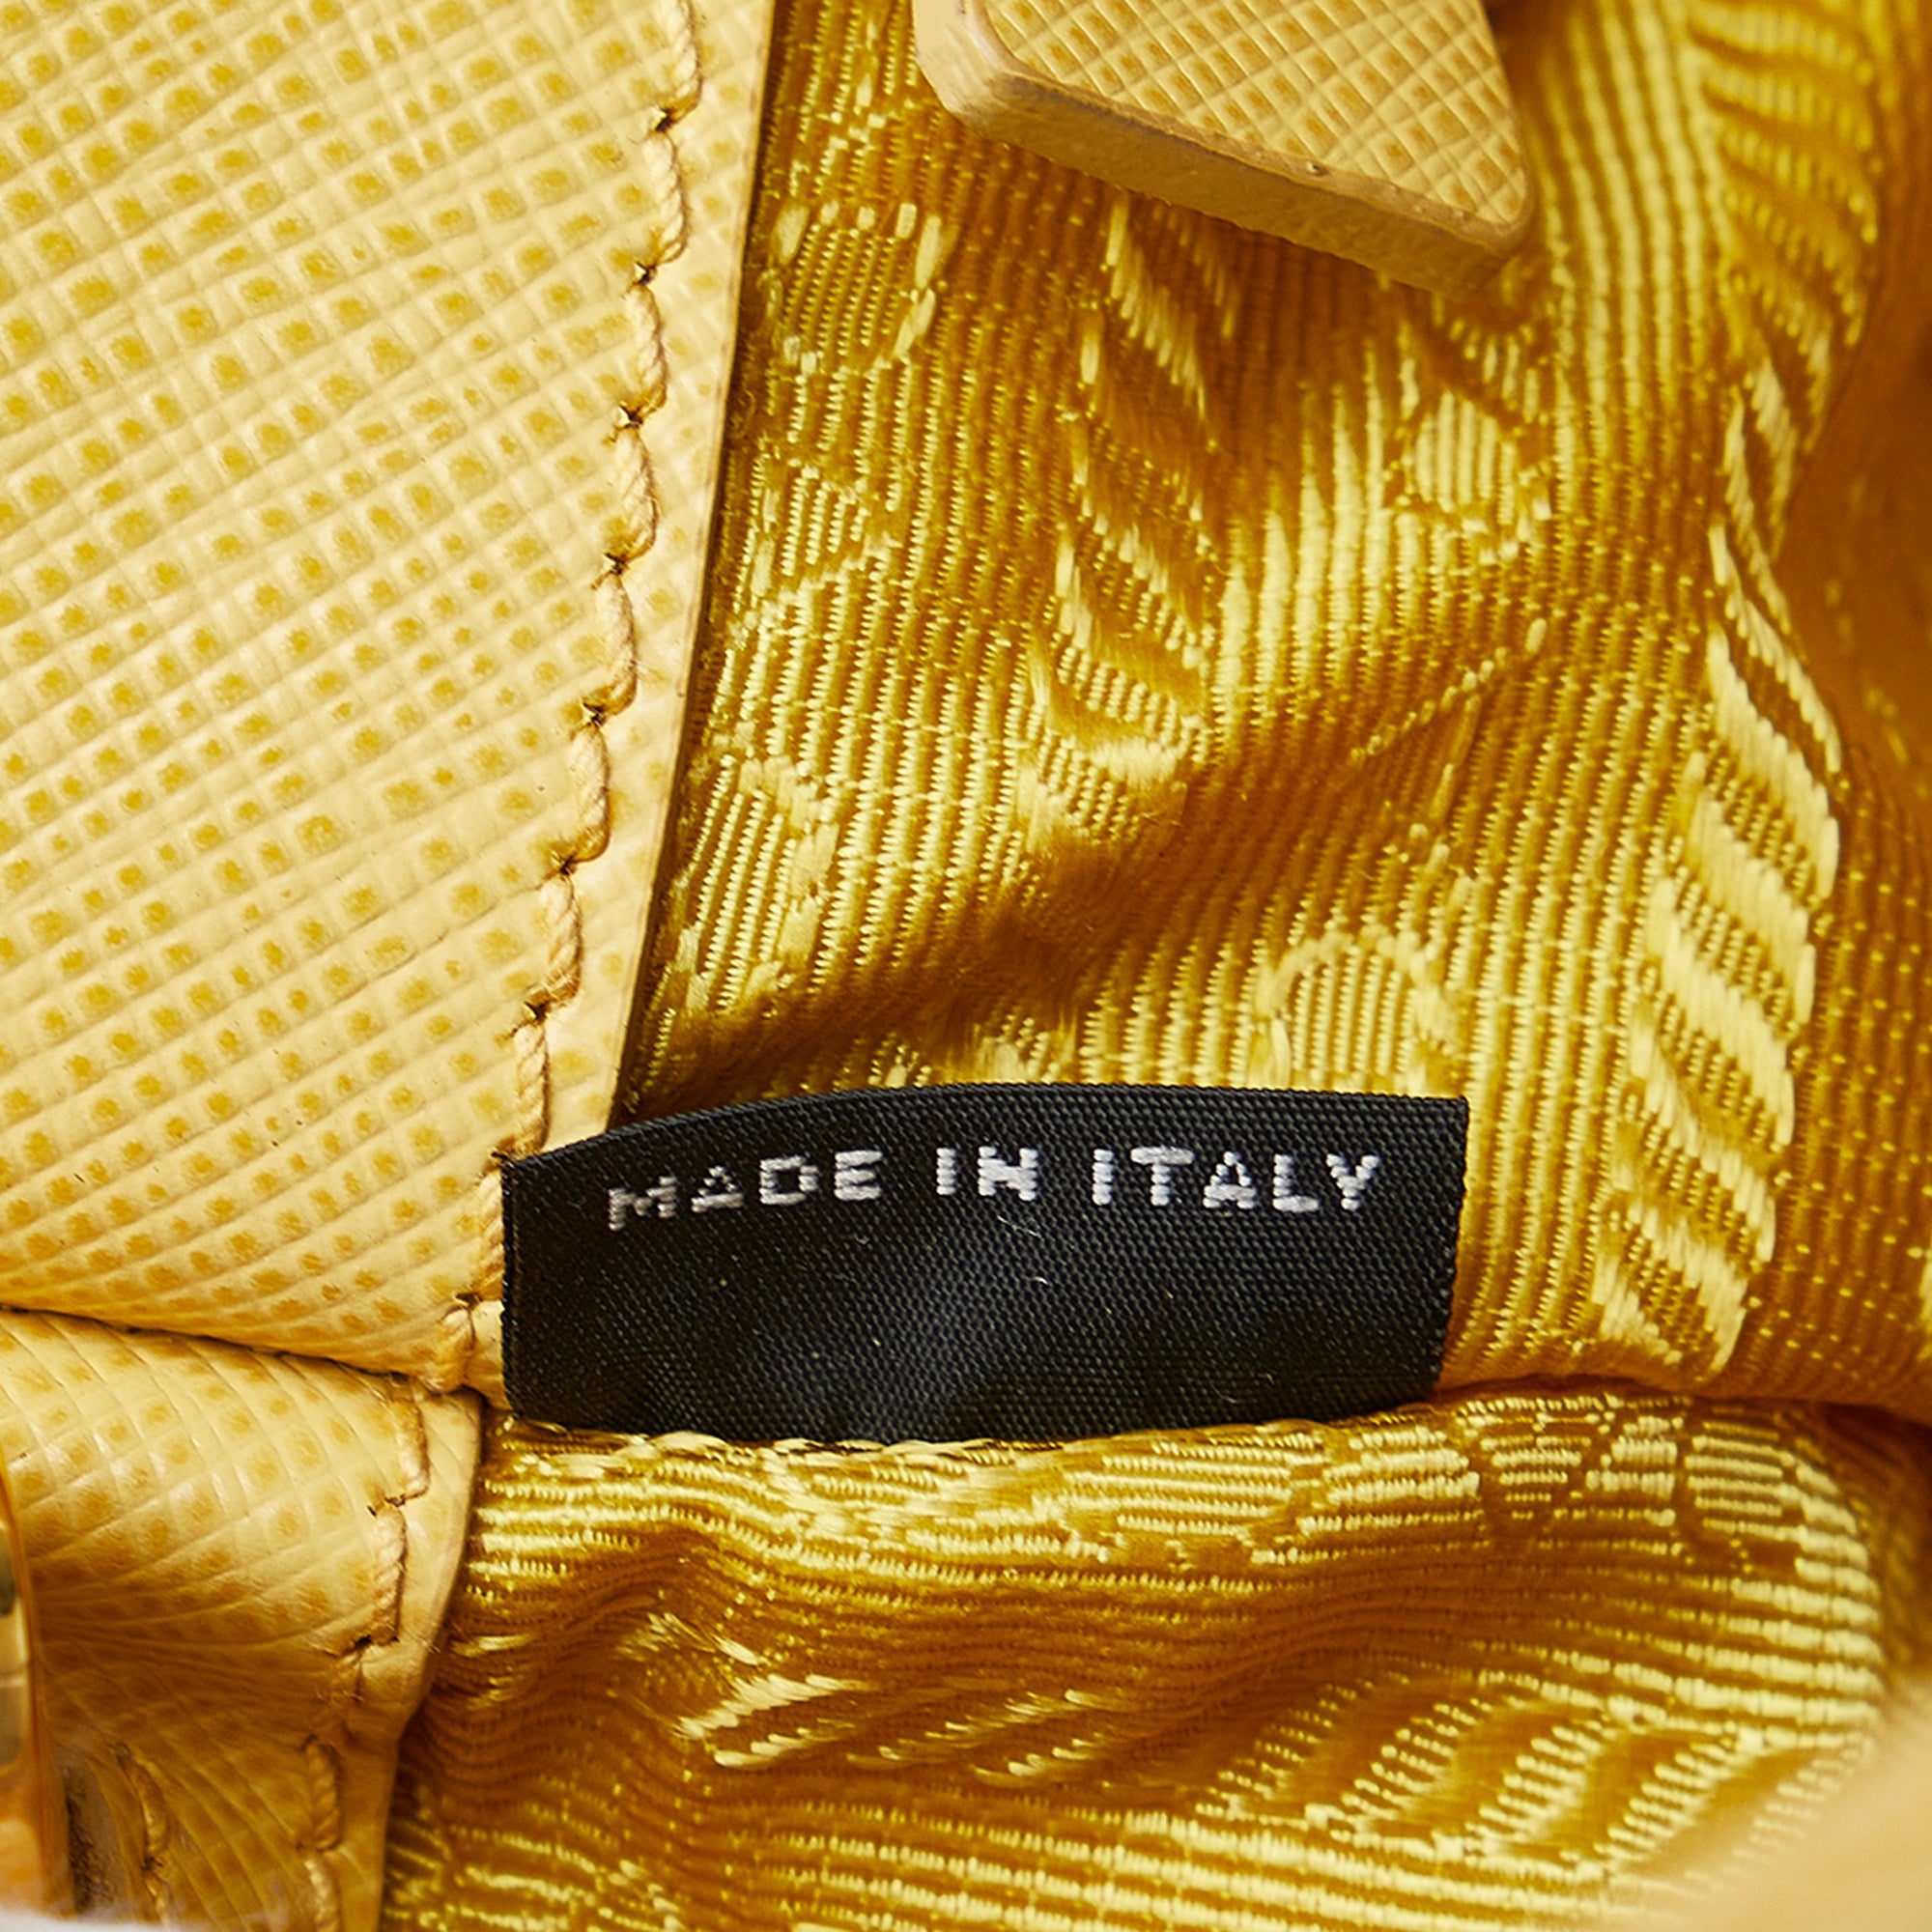 Prada Galleria Small Saffiano Double-zip Tote Bag in Yellow